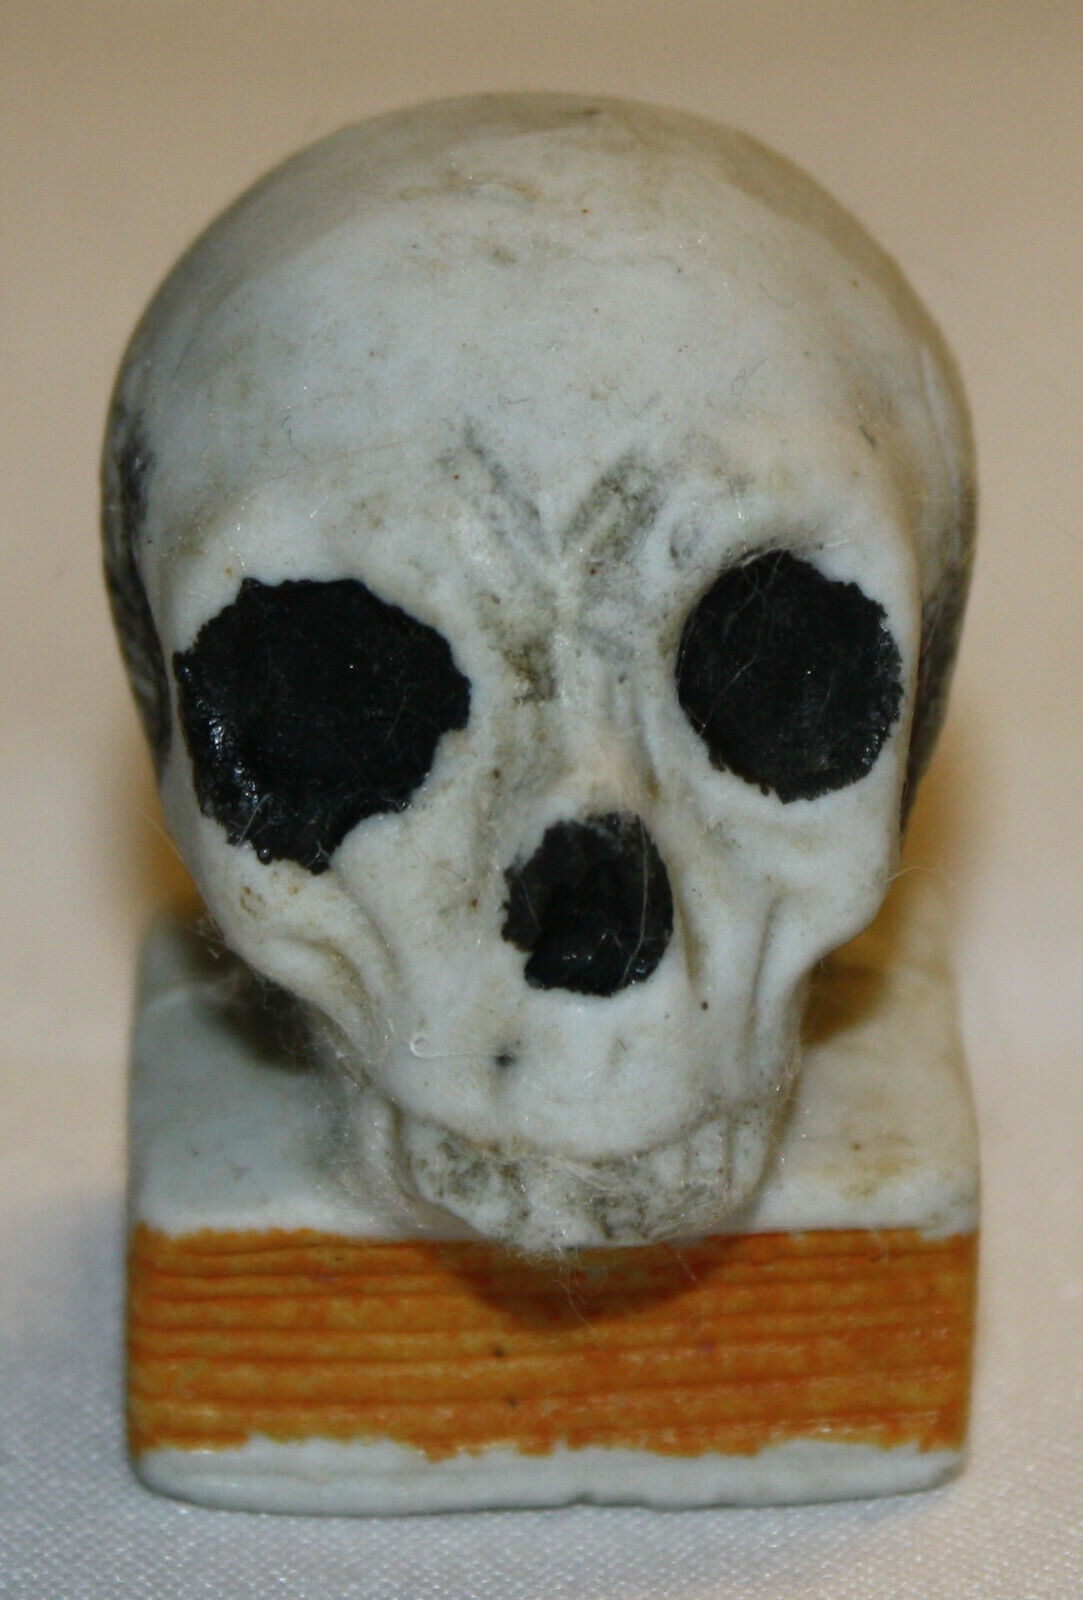 Antique or Vintage Japanese Ceramic Skull on Book